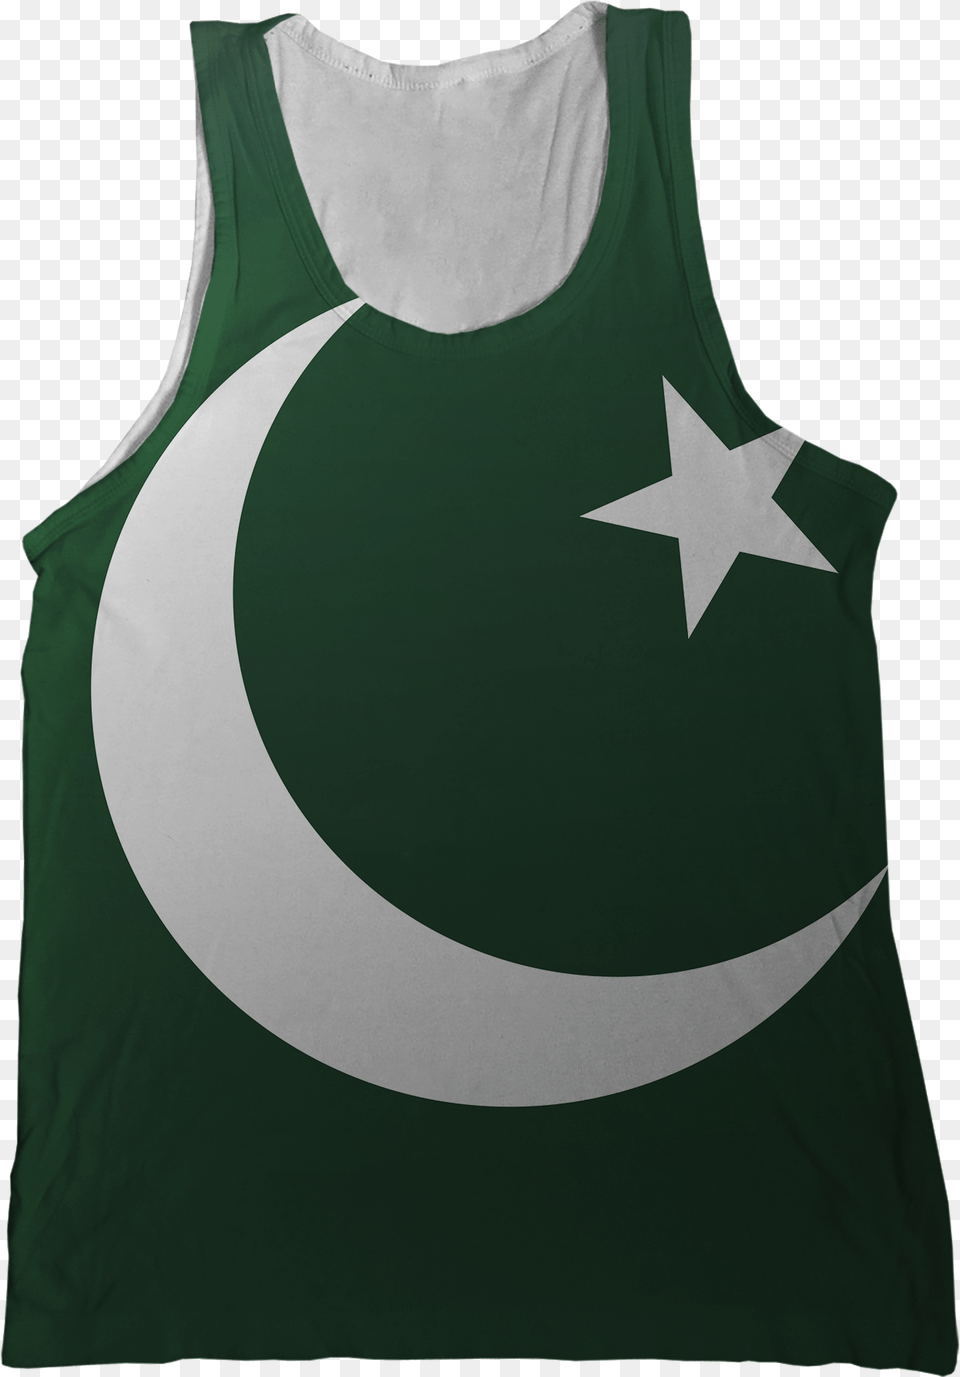 Pakistan Flag Tank Top, Clothing, Tank Top Png